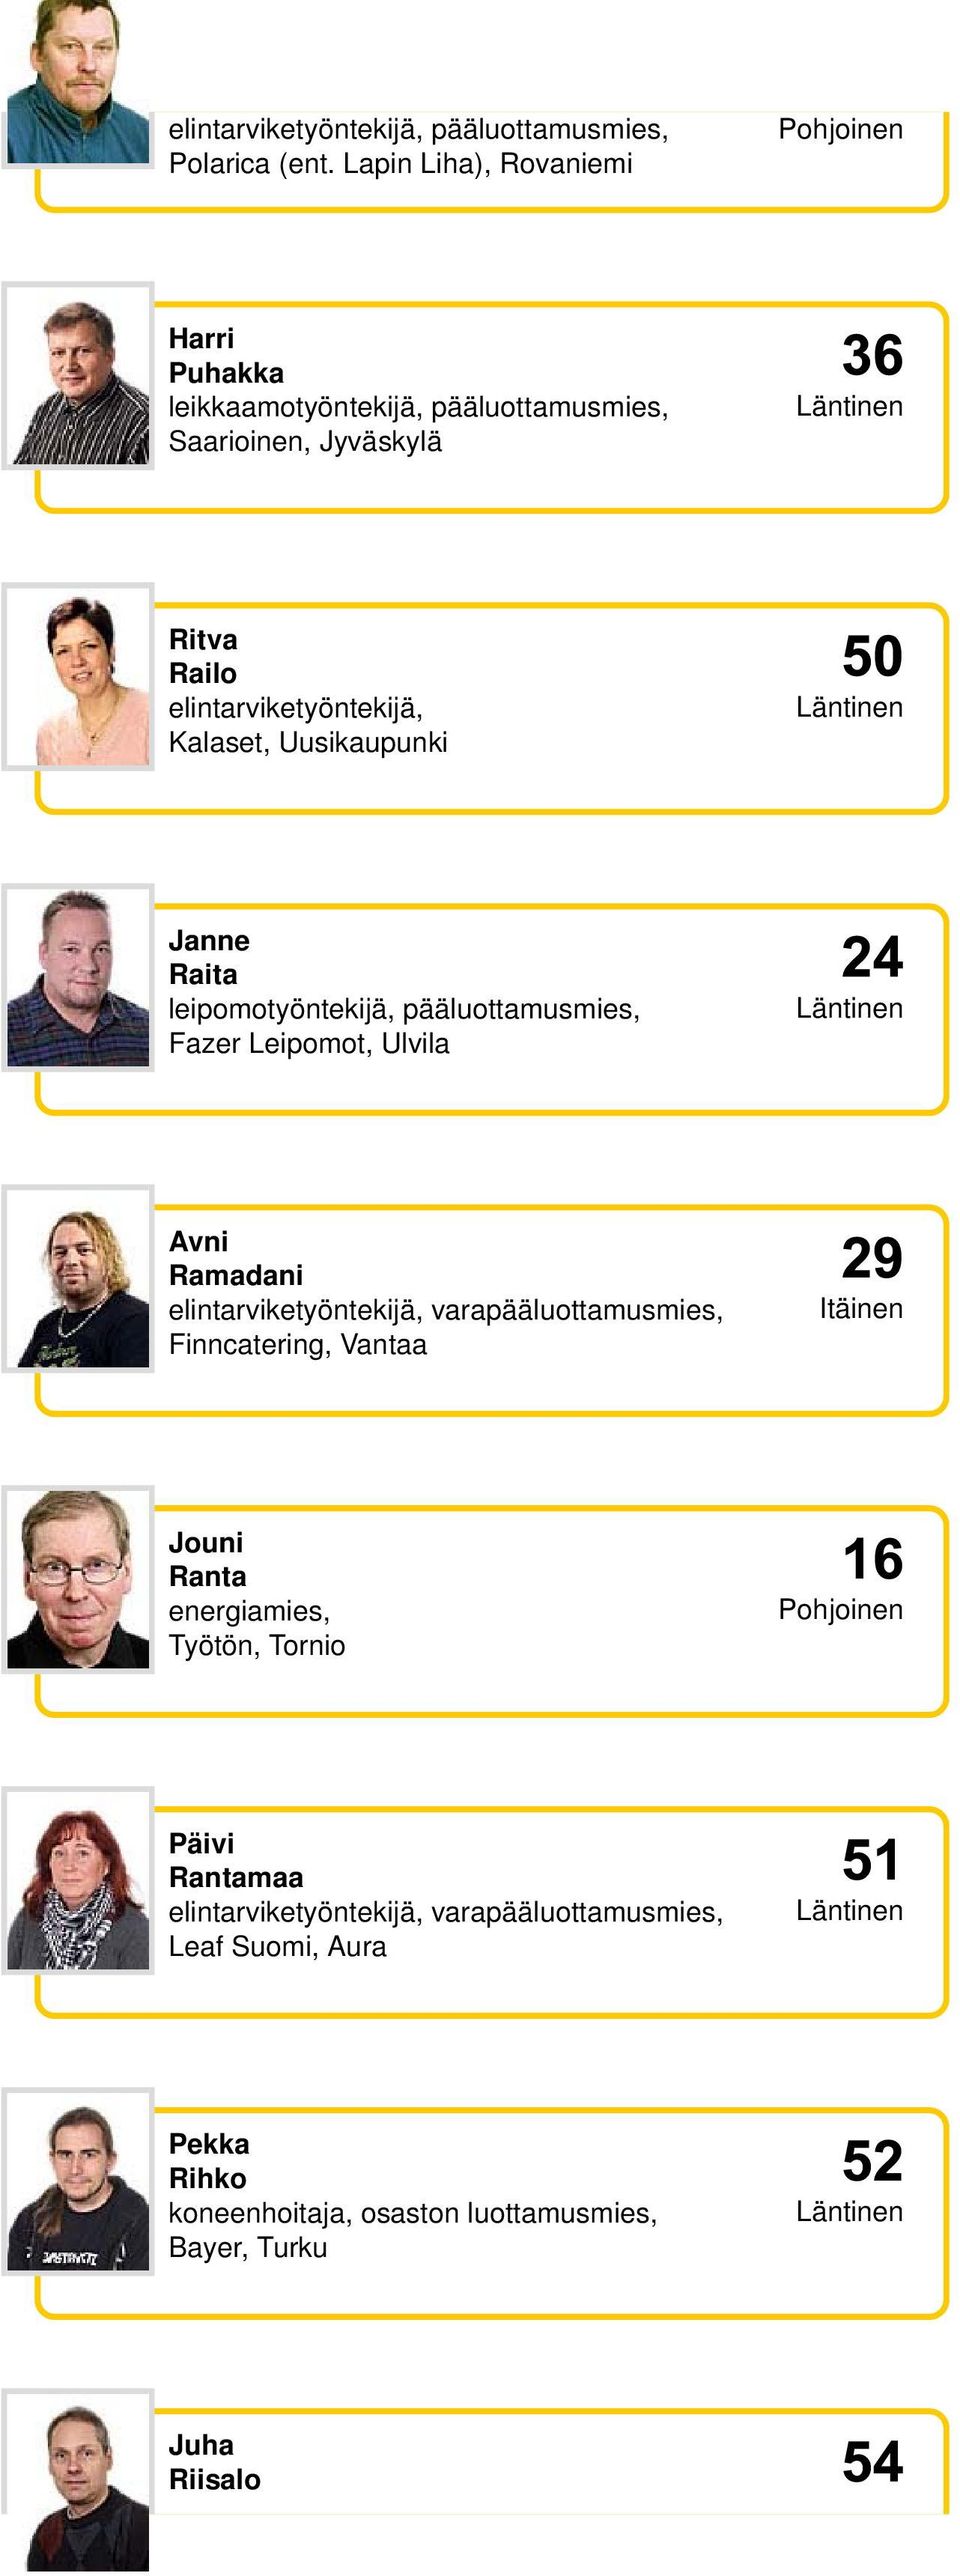 Kalaset, Uusikaupunki Janne Raita leipomotyöntekijä, pääluottamusmies, Fazer Leipomot, Ulvila Avni Ramadani